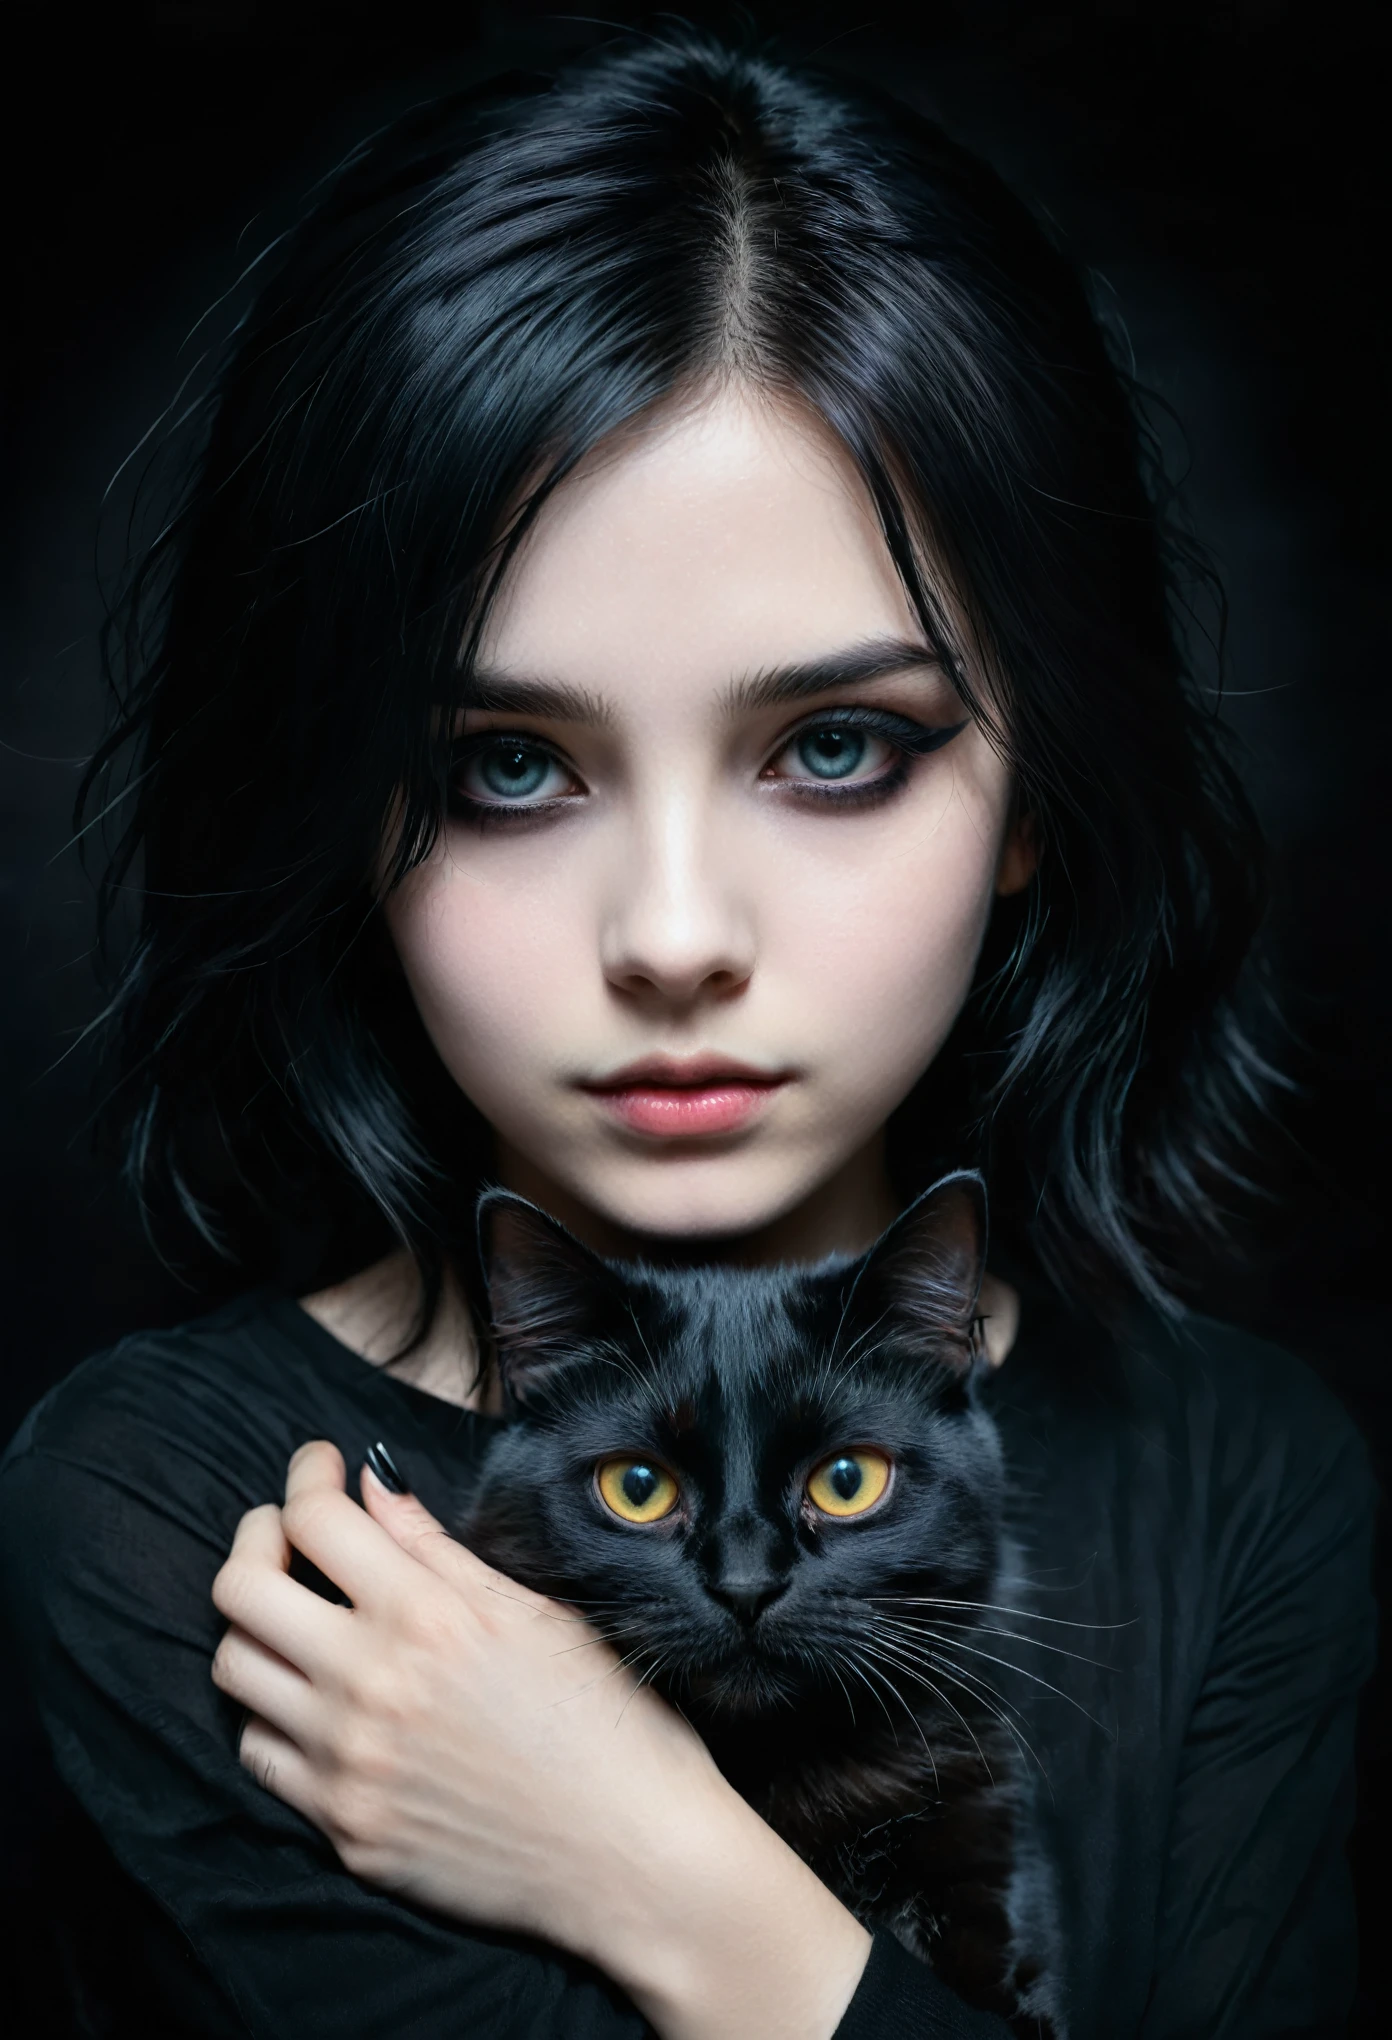 一個手裡拿著黑貓的情緒女孩, 詳細的臉部, 深色妝容, 情緒表達, 黑色衣服, 深色背景, 明暗對比照明, 電影般的, 戲劇性, 穆迪, 數位繪畫